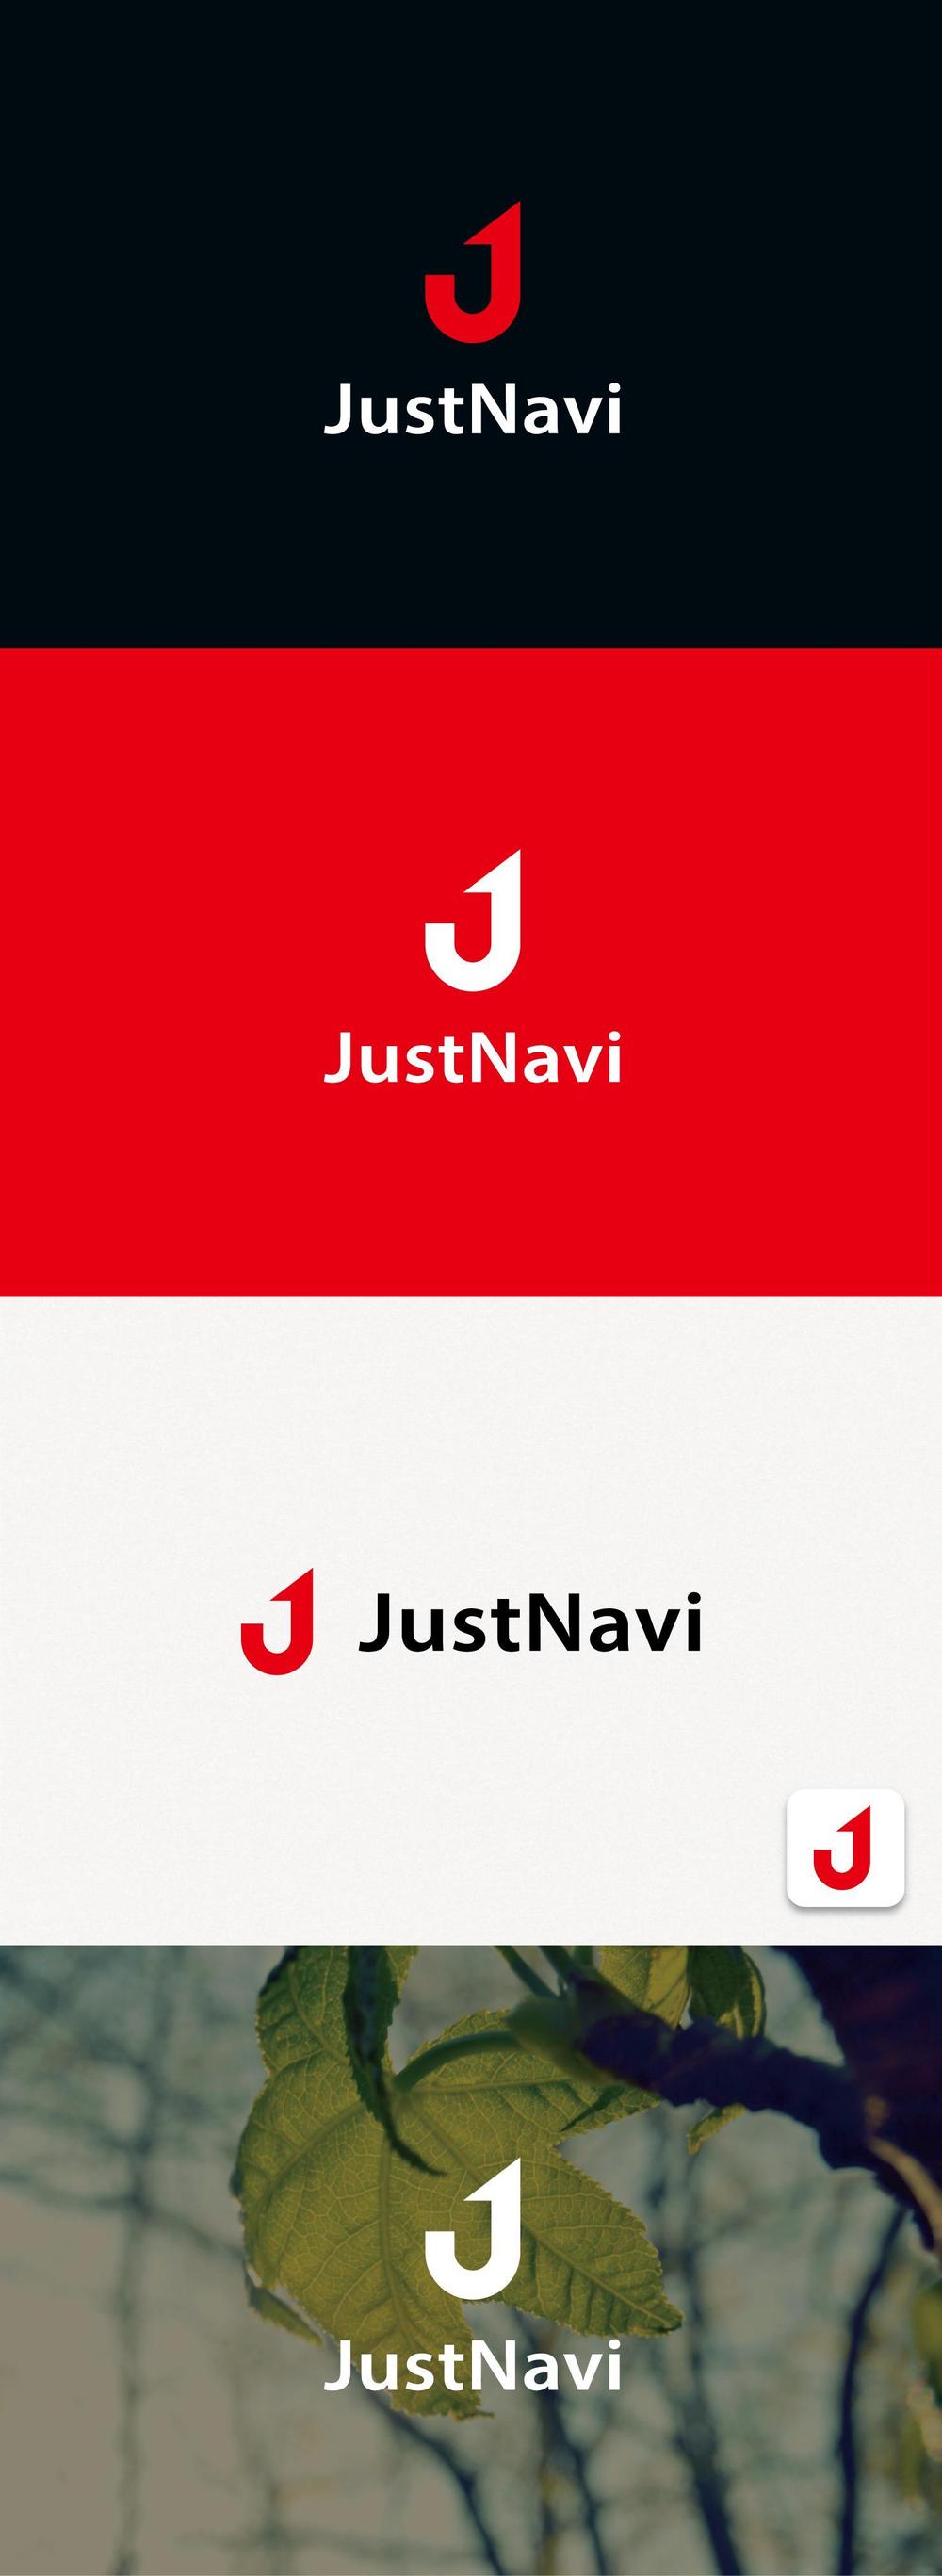 ポータルサイト「JustNavi」のロゴ作成